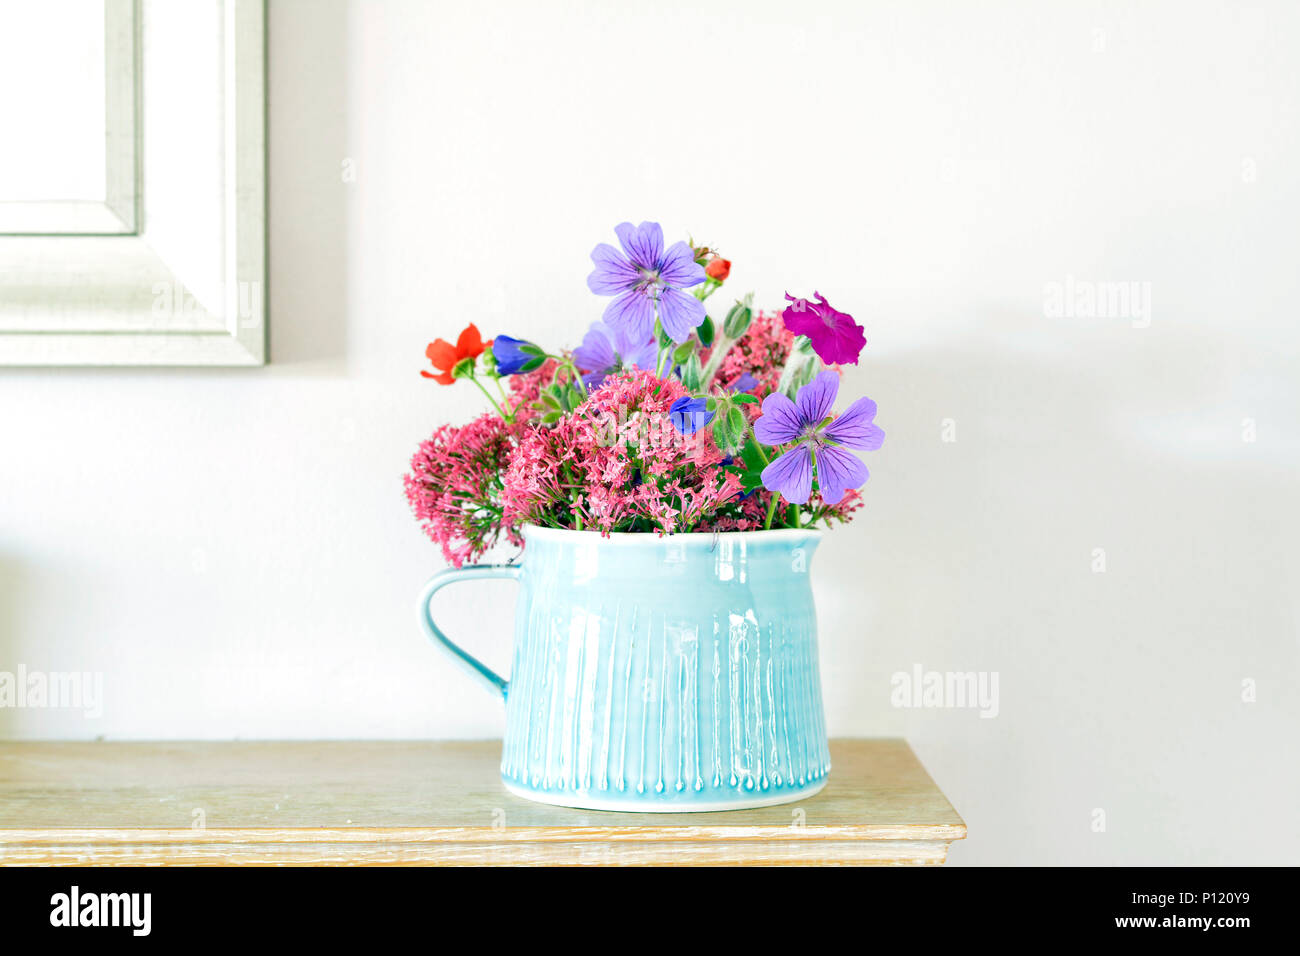 Blau steinzeug Krug mit hübschen Garten Blumen auf einem kaminsims Stockfoto